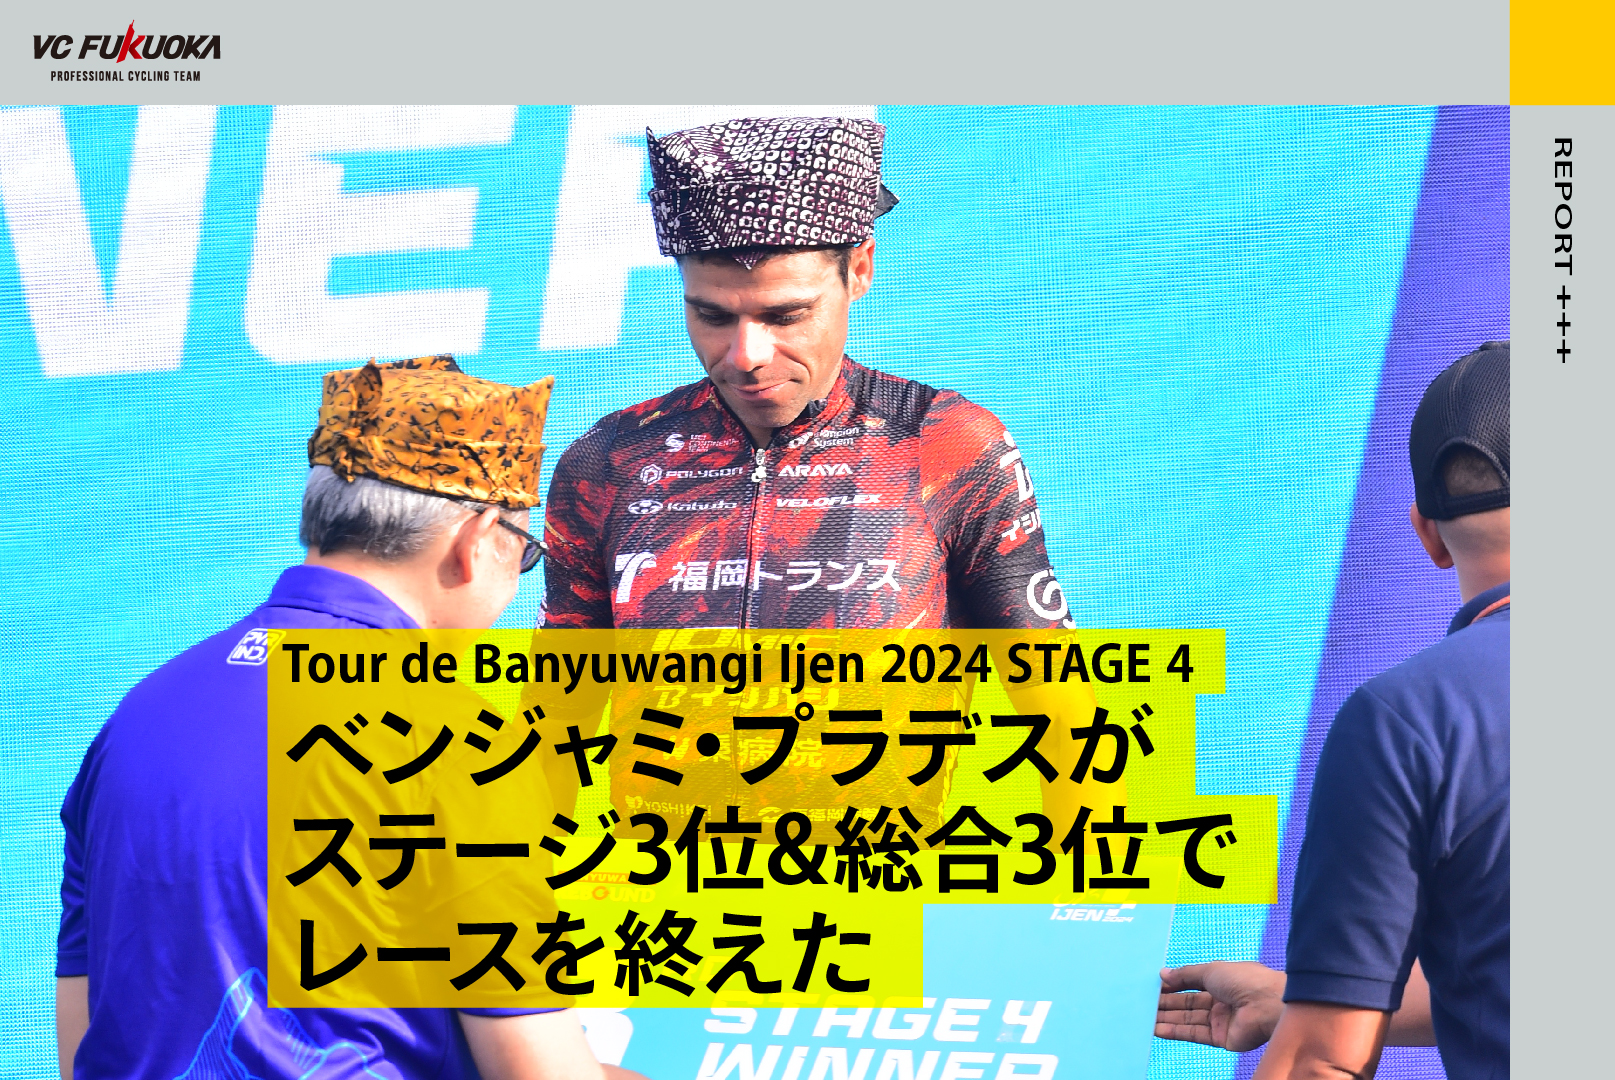 7/25 Tour de Banyuwangi Ijen STAGE4でベンジャがステージ3位&総合も3位で終える